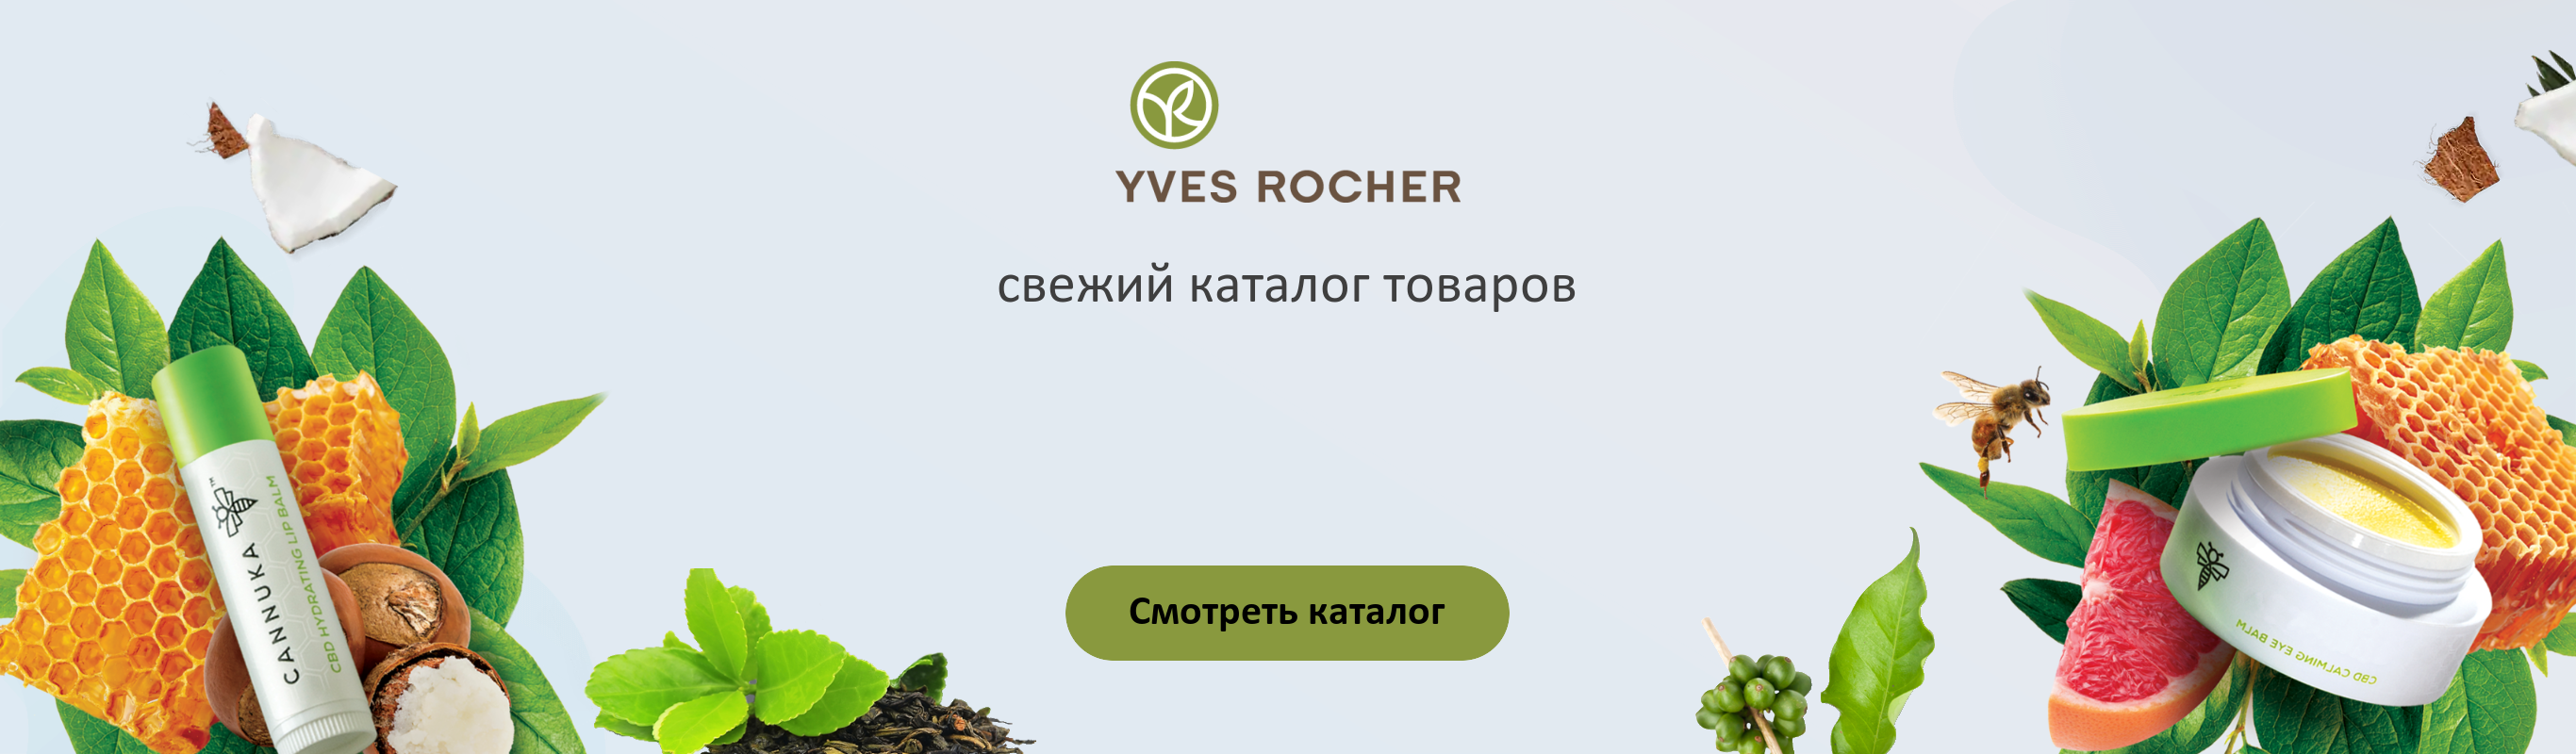 Магазин Экспедиция В Санкт Петербурге Официальный Сайт